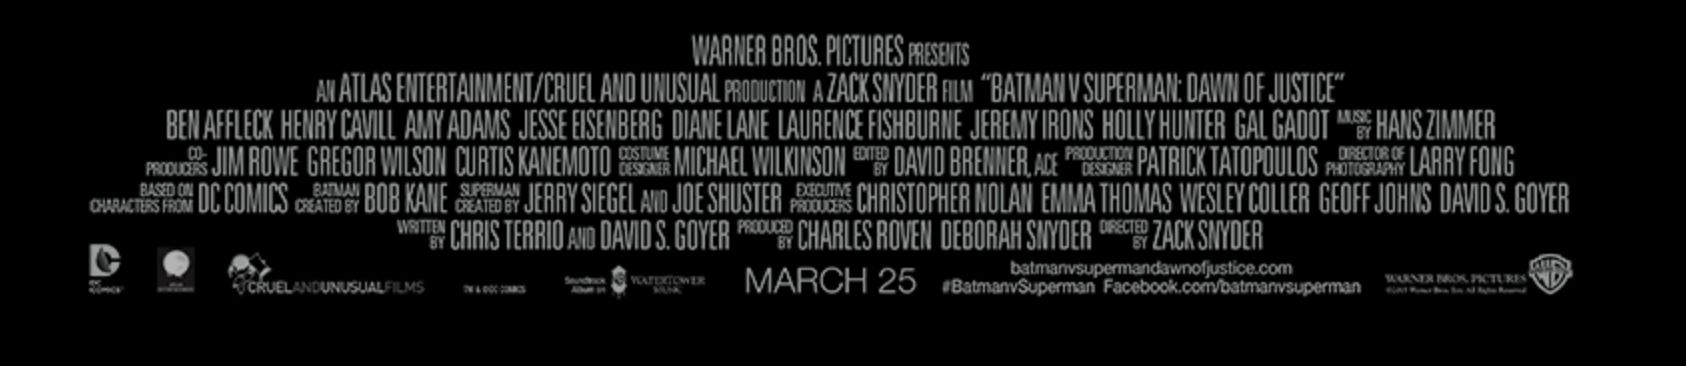 Batman V Superman cast